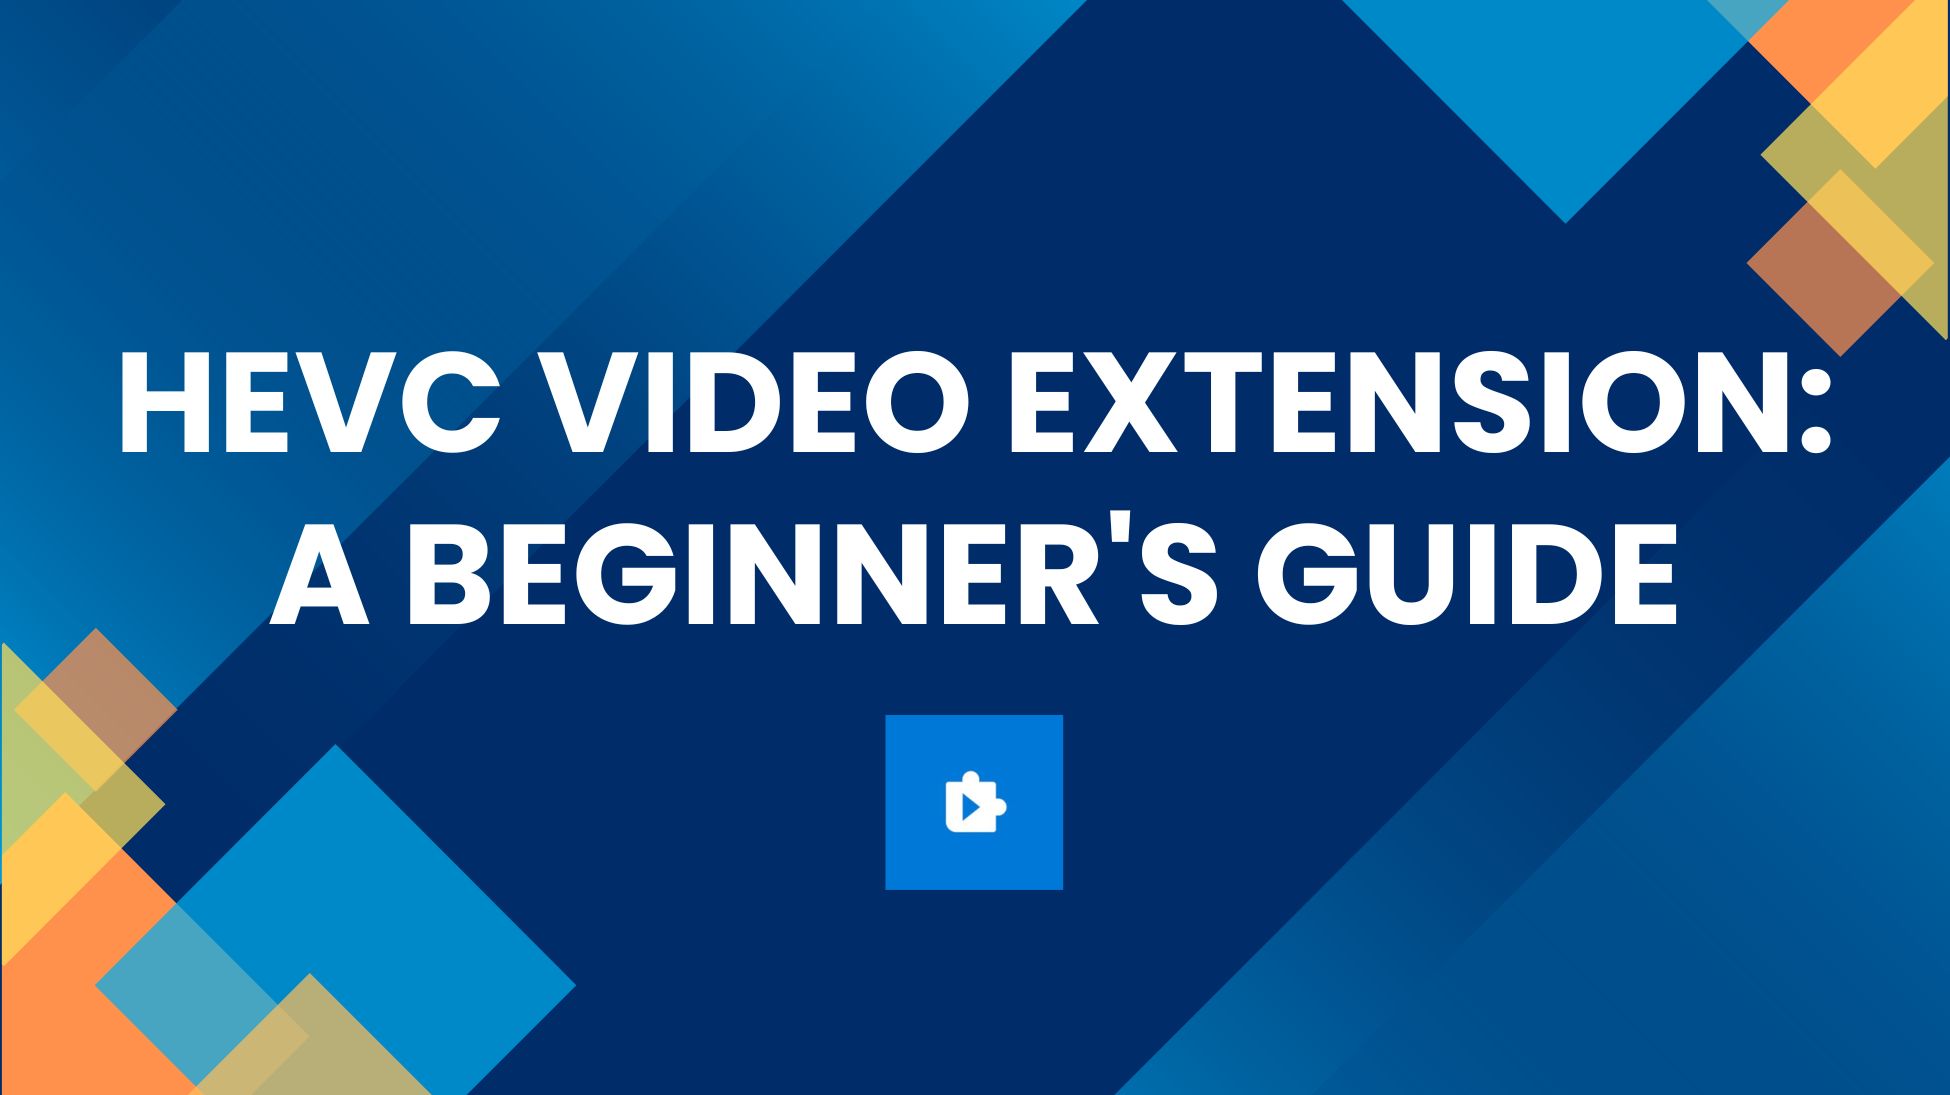 Una guida definitiva per comprendere le estensioni video HEVC